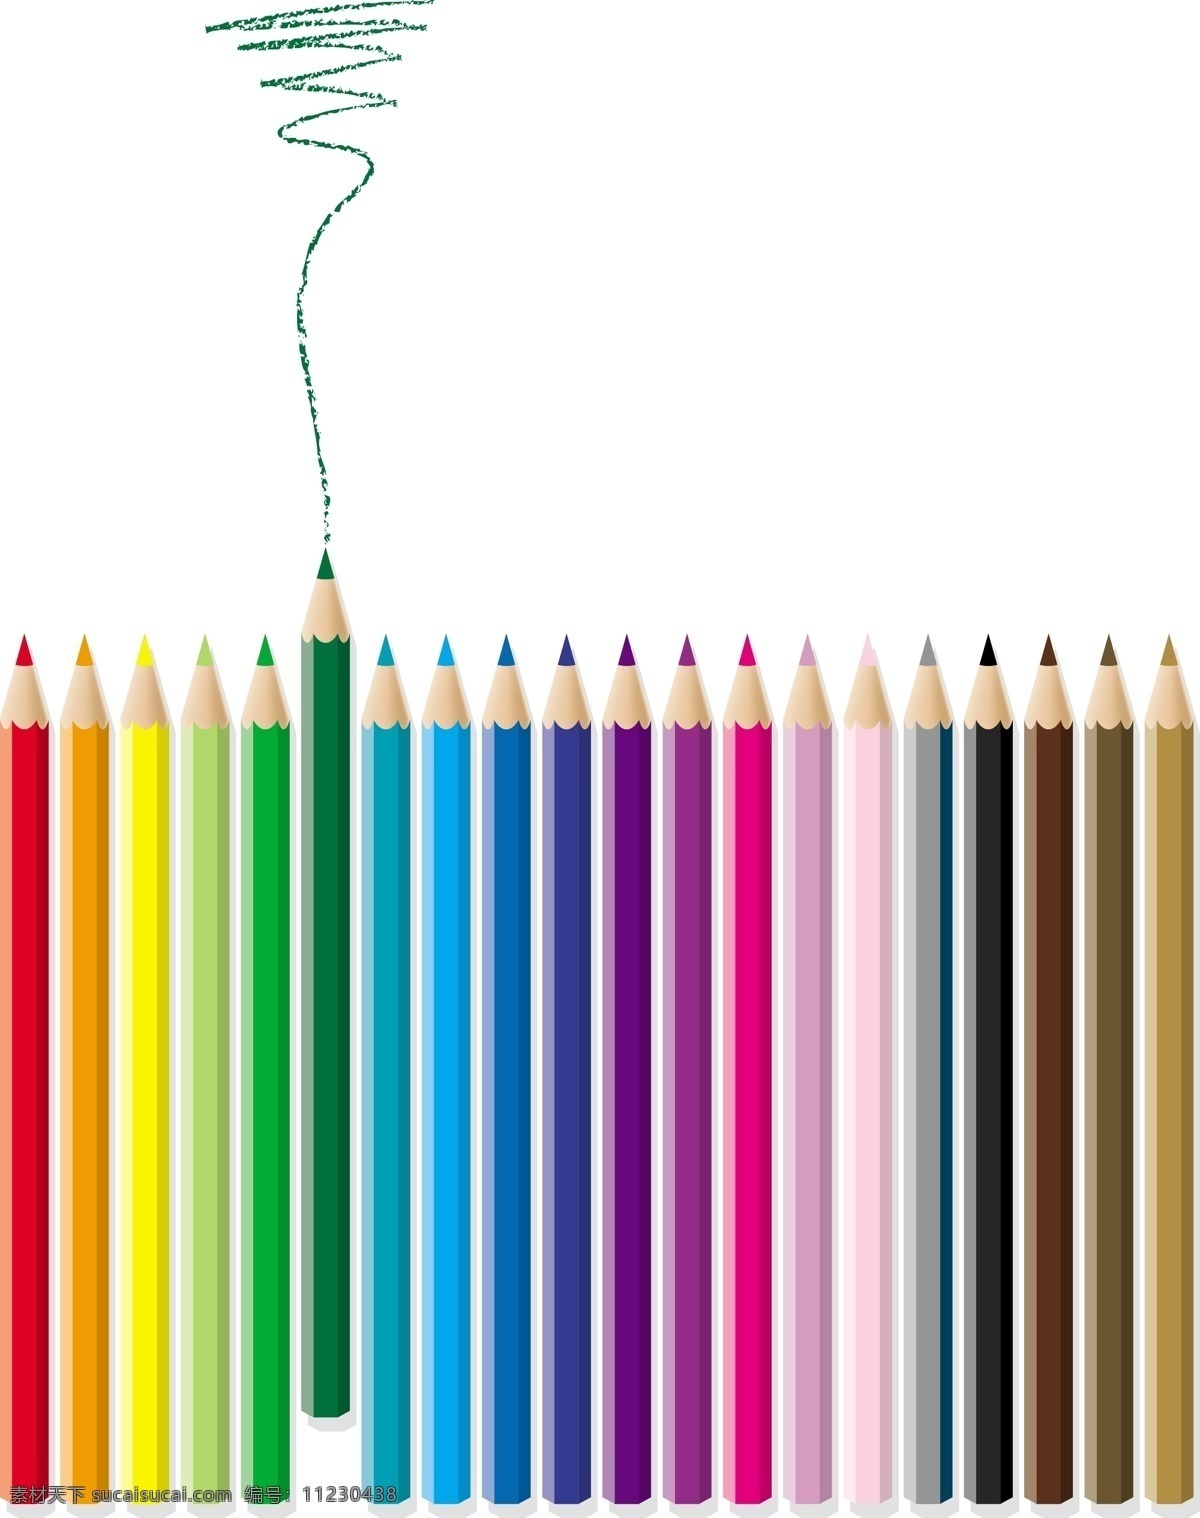 彩色铅笔 笔 排列 色彩 生活百科 学习用品 矢量图库 矢量